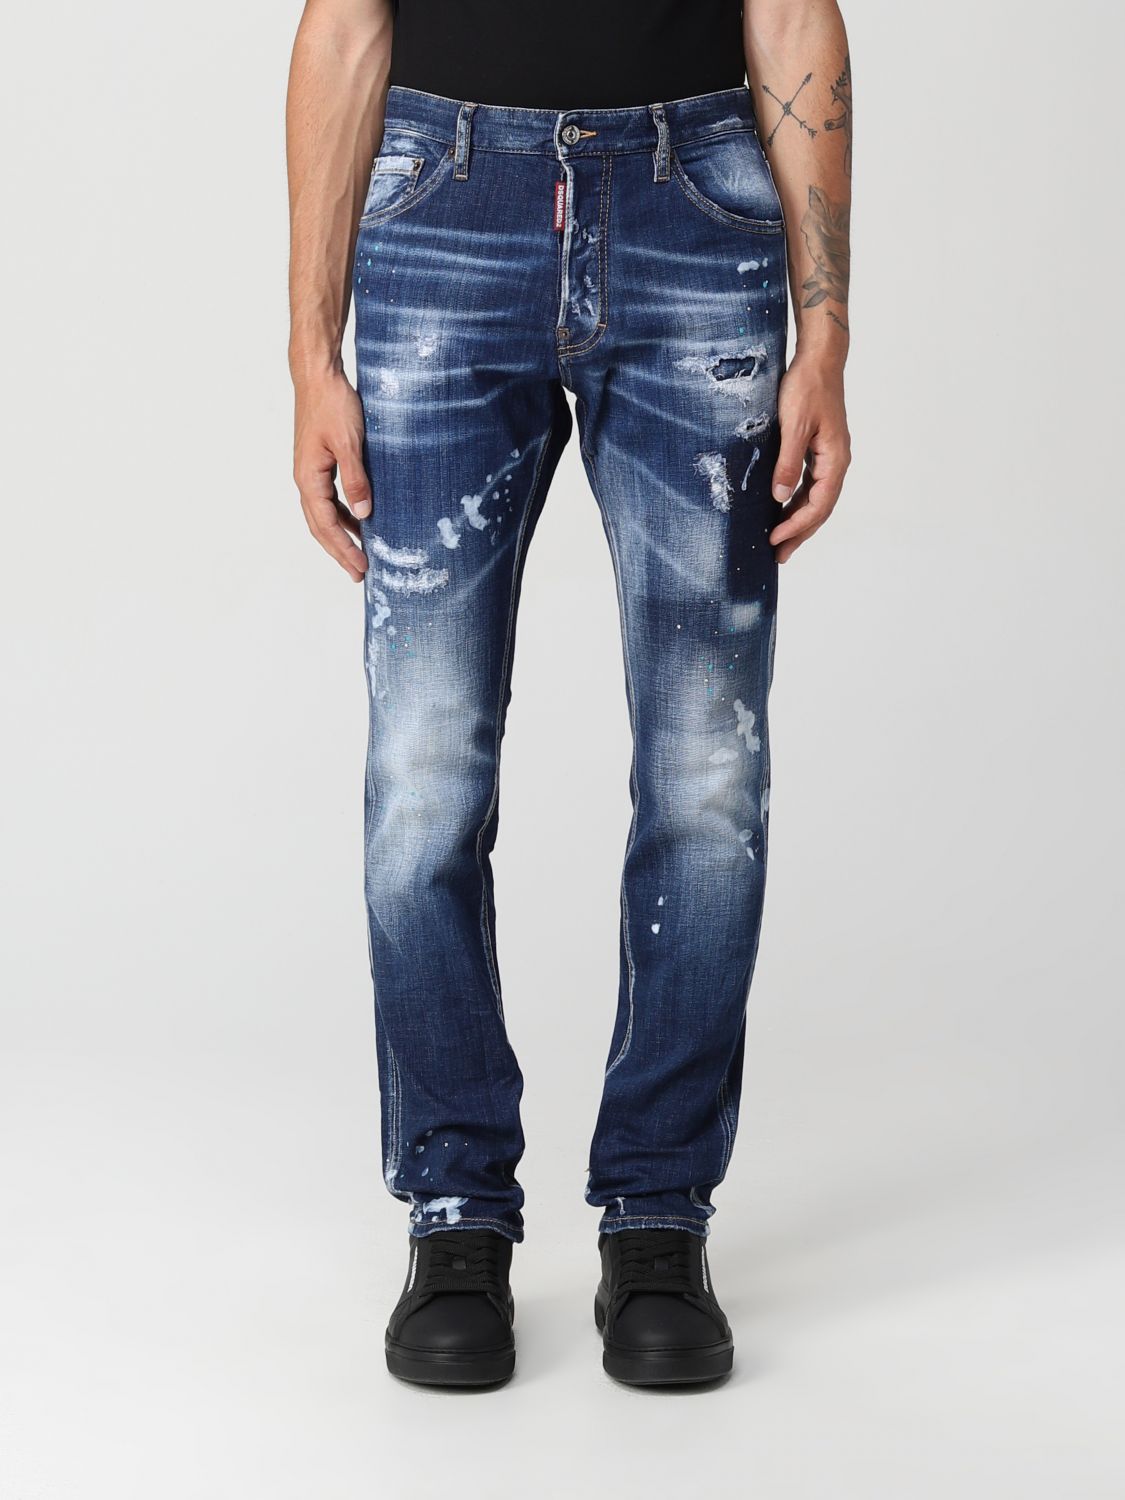 DSQUARED2: Jeans para hombre, Denim | Dsquared2 S71LB1102S30342 en línea en